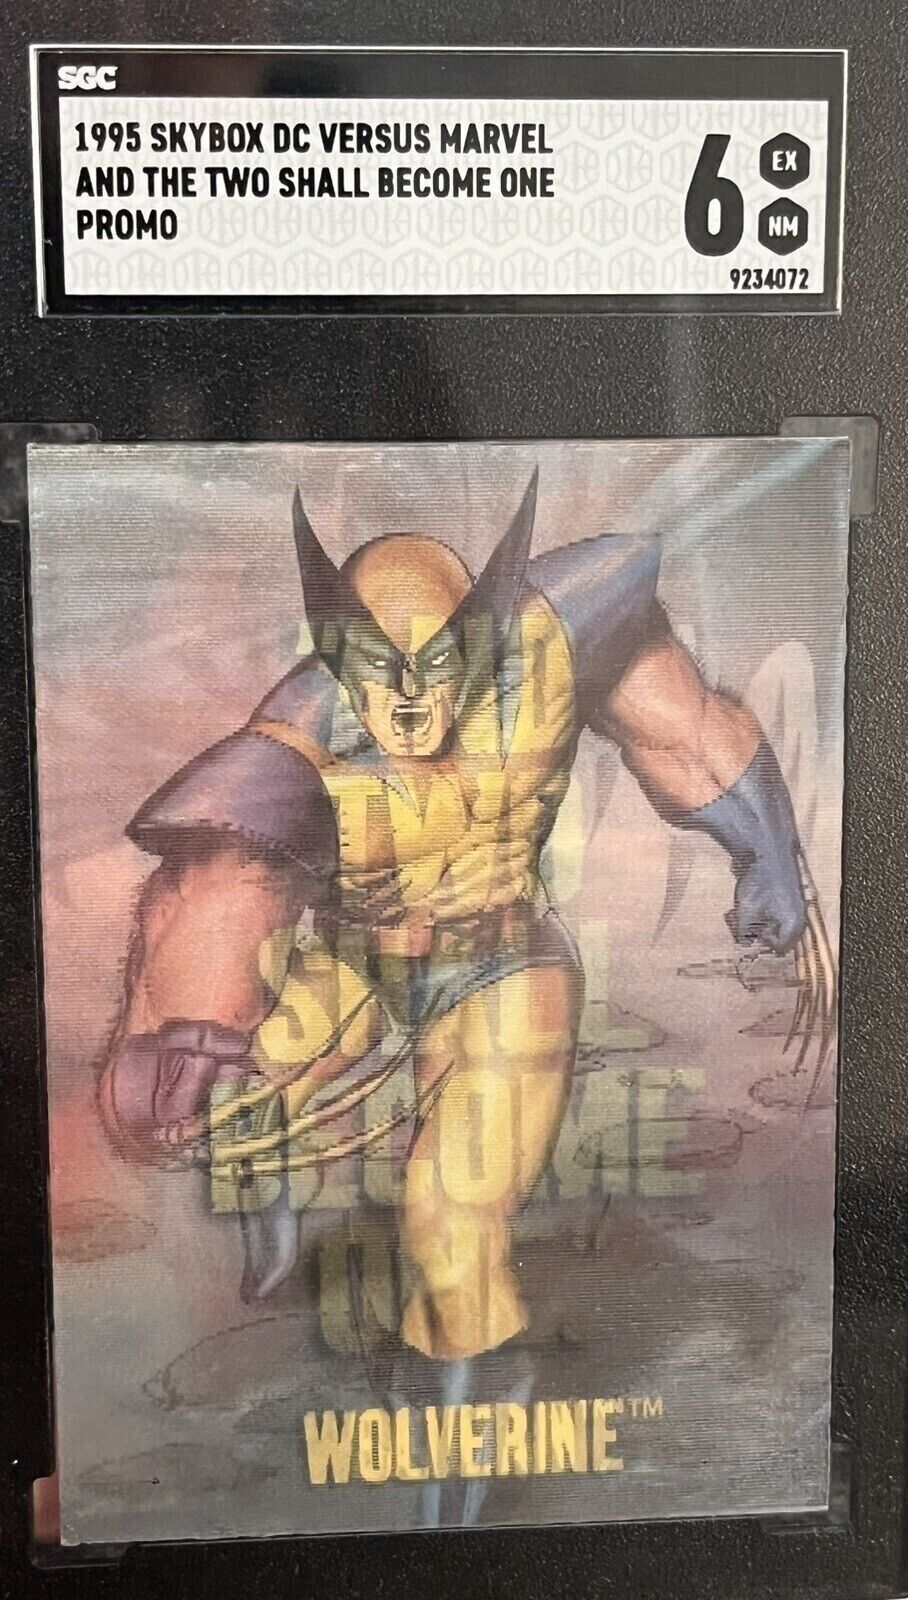 1995 Fleer DC Versus Marvel Mirage Batman Wolverine “Dark Claw” PROMO Card Rare